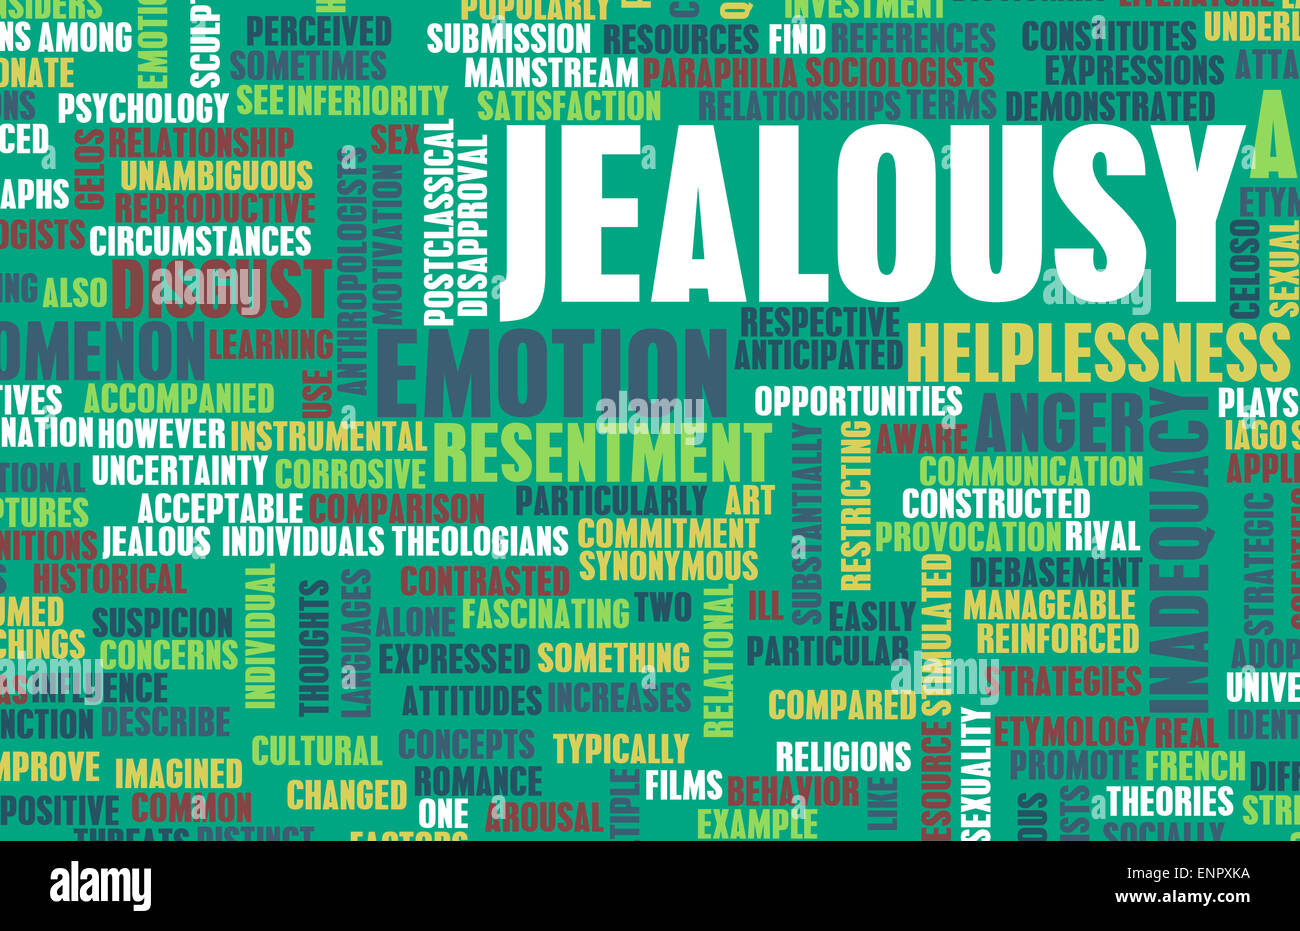 Jealousy as a Negative Emotion Concept Art Stock Photo